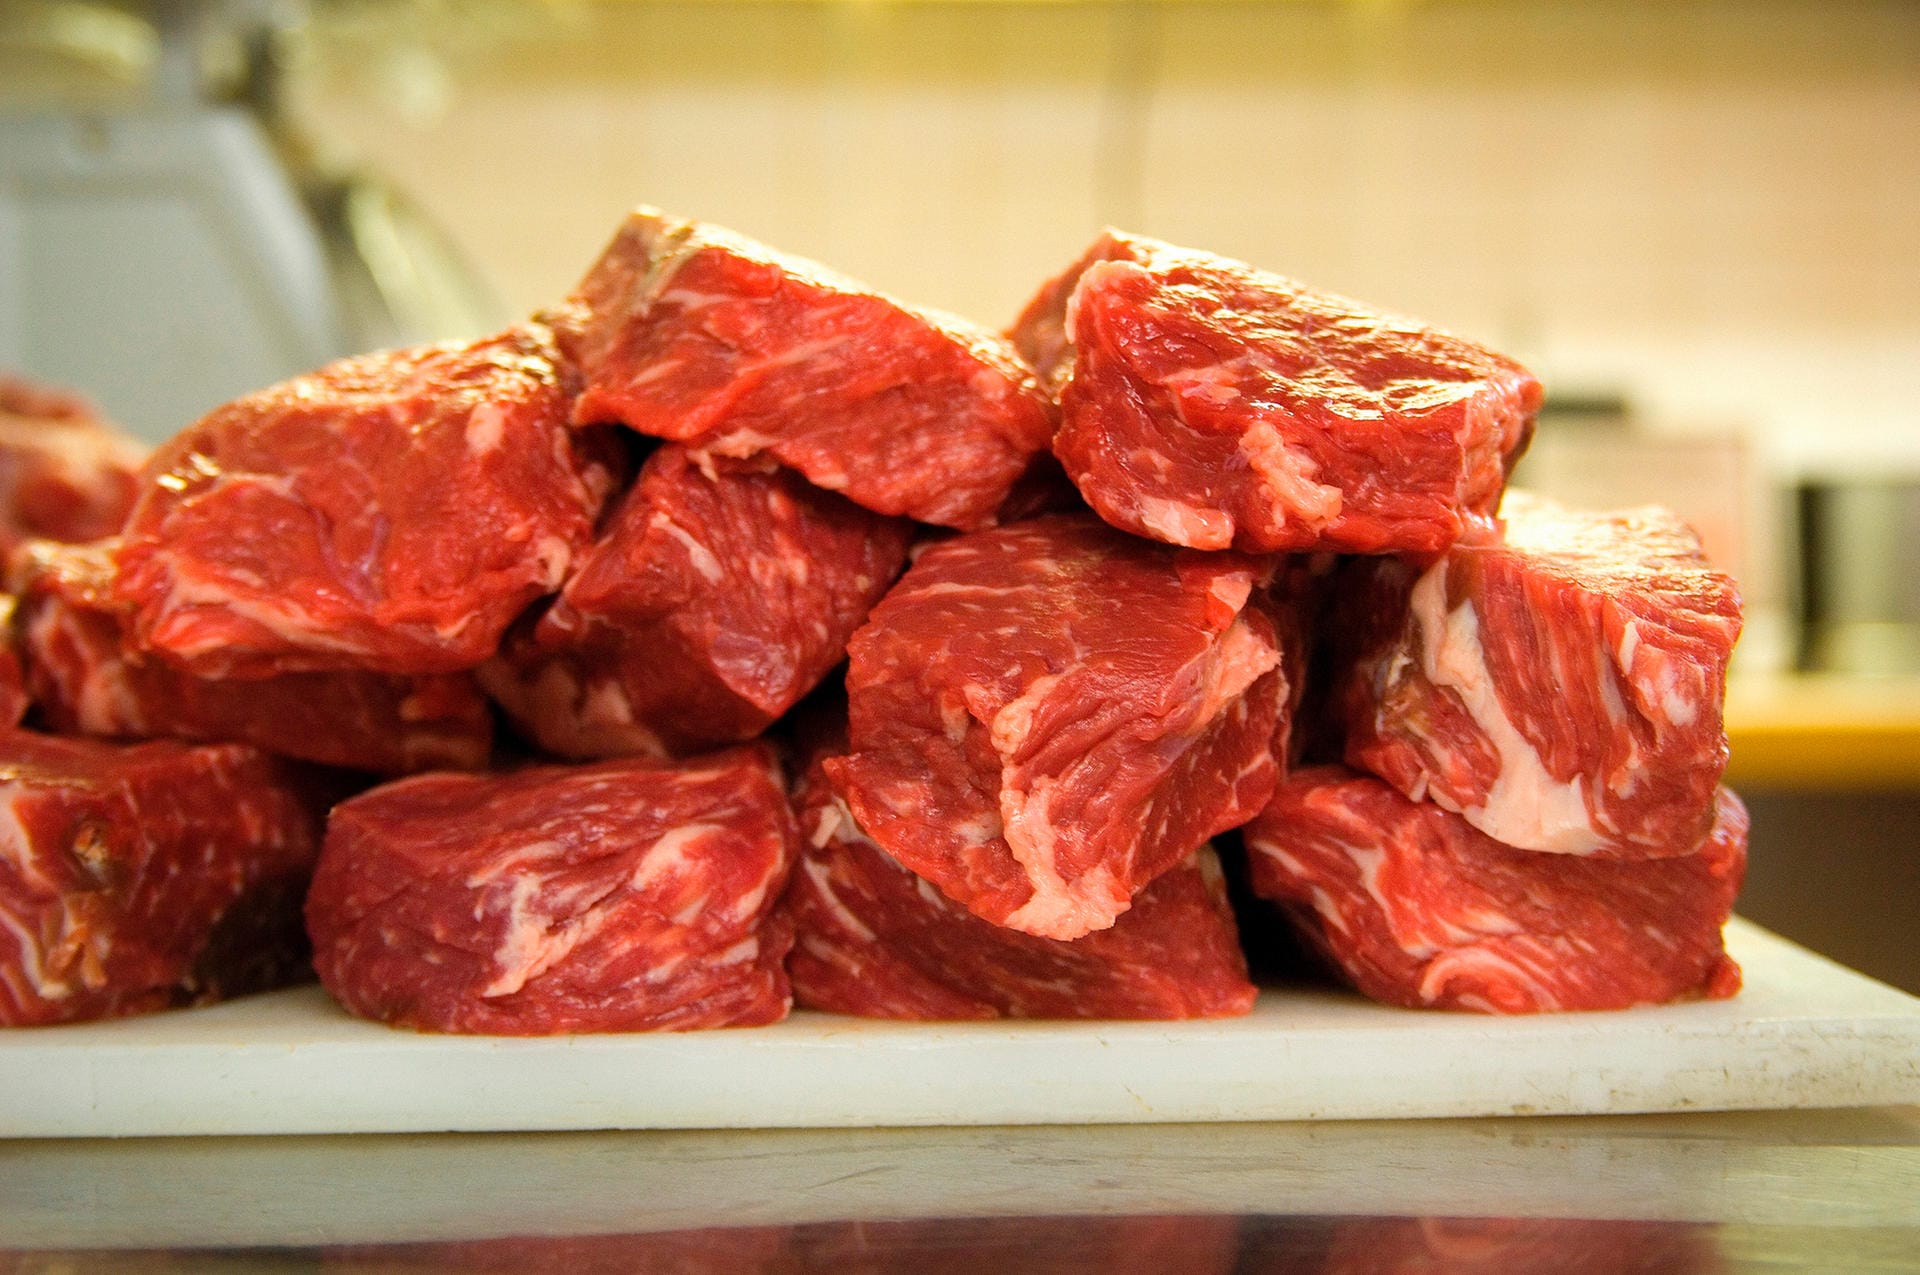 Das ideale Burgerfleisch ist mageres Rindfleisch. Am besten ein Stück Entrecôte, das hat die perfekte Mischung aus Fett (20 Prozent) und Fleisch.